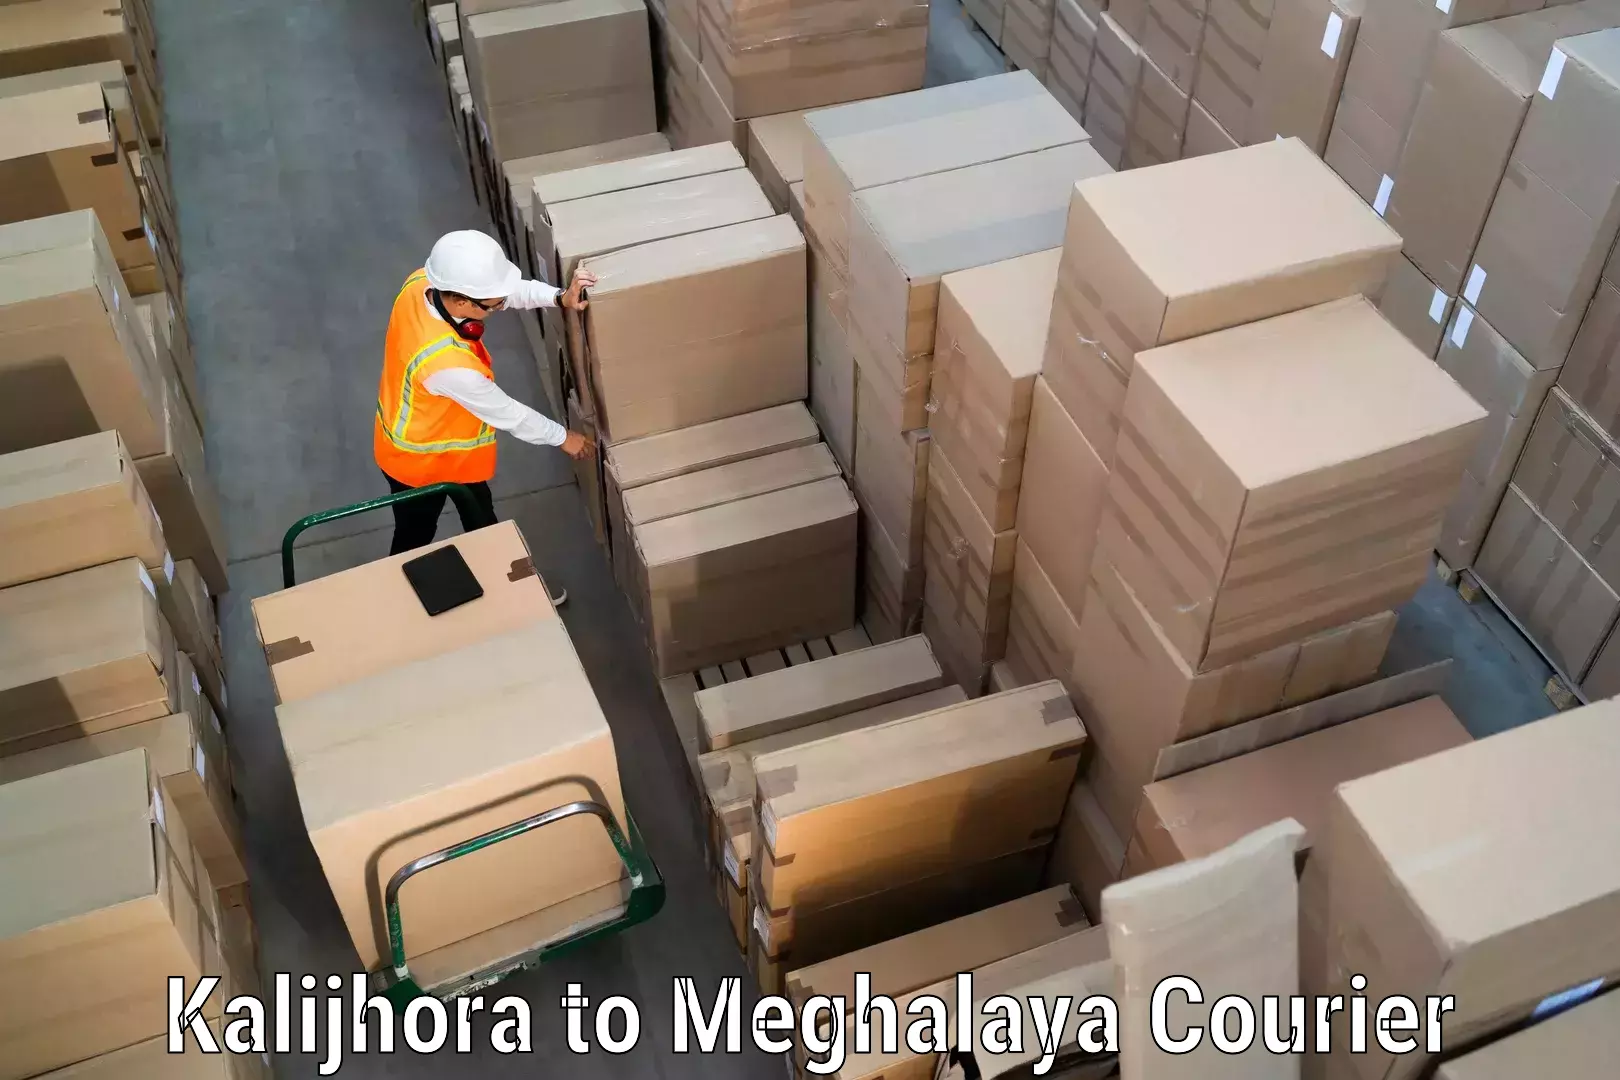 Global logistics network Kalijhora to Meghalaya